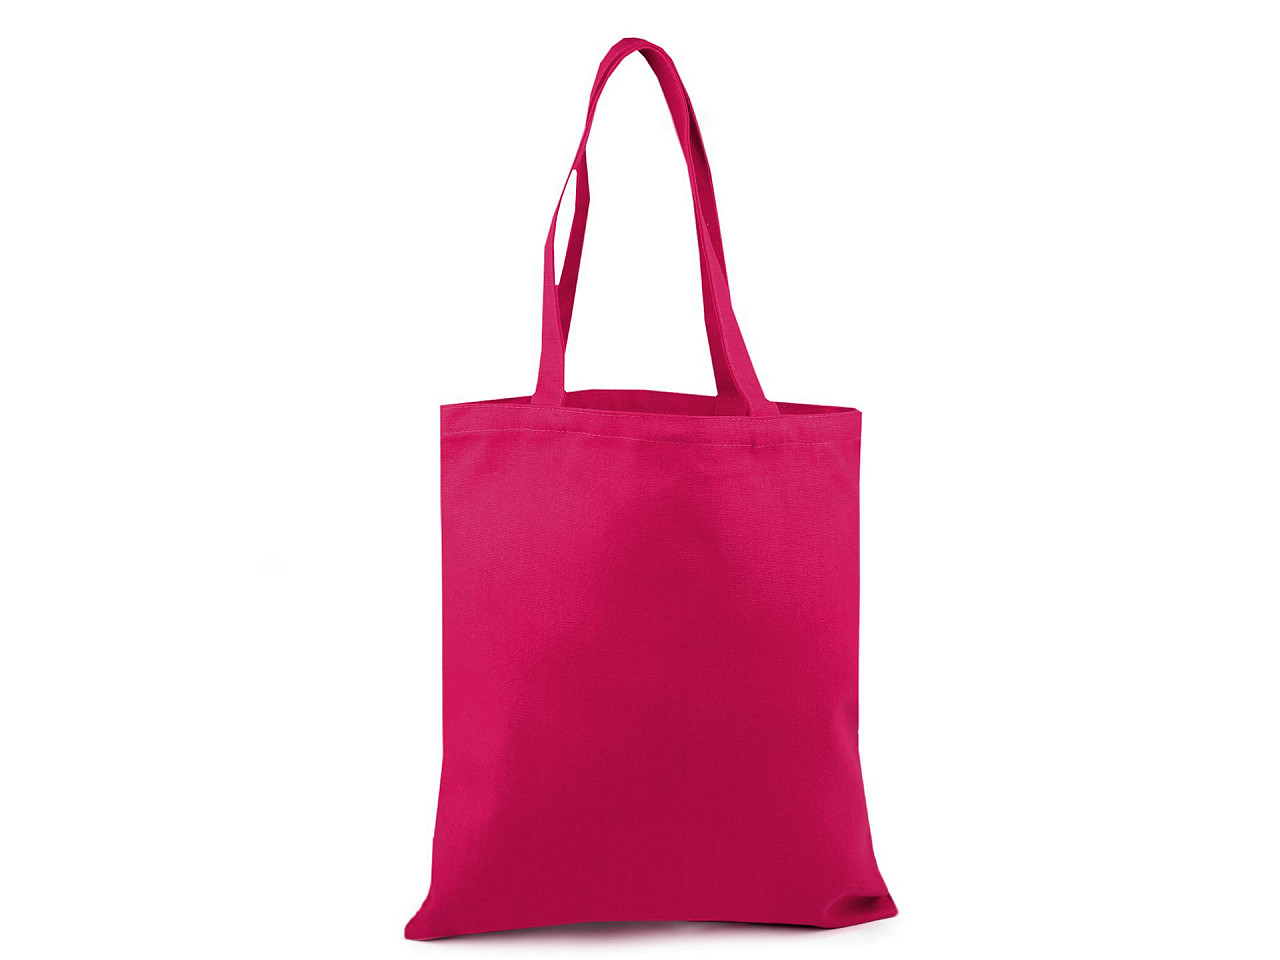 Geantă textil din bumbac pentru personalizare 35x39 cm, roz zmeură, 1 buc